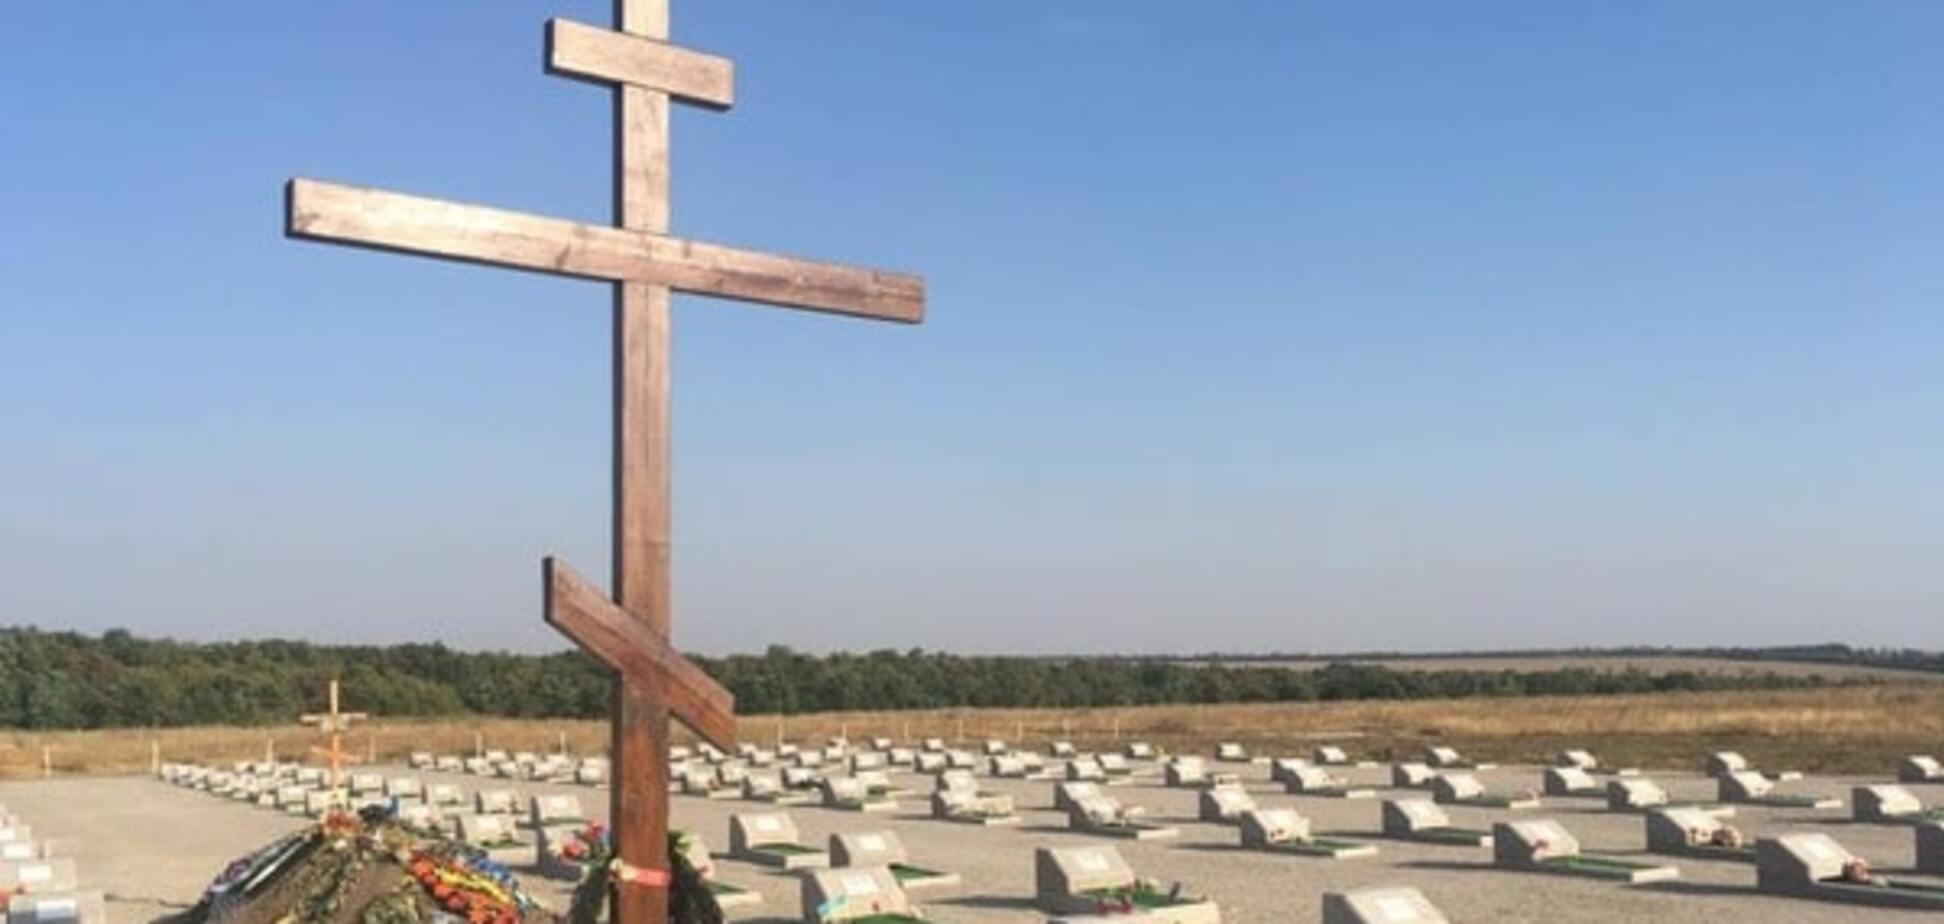 Похоронены 200 человек: в сети показали кладбище погибших под Иловайском бойцов АТО